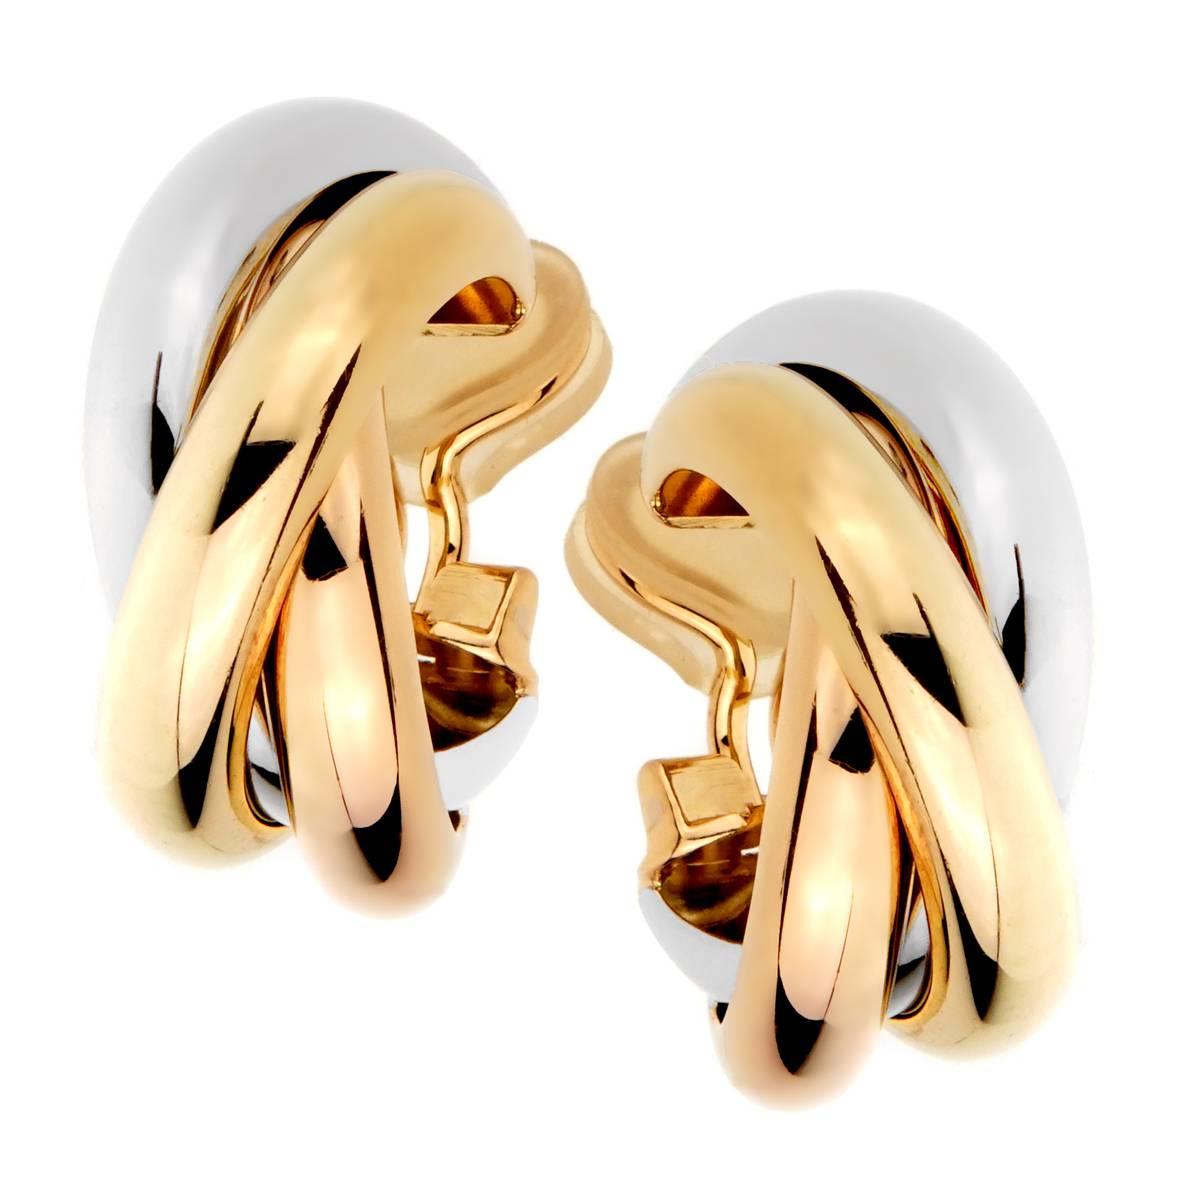 Cartier Trinity Gold Hoop Earrings